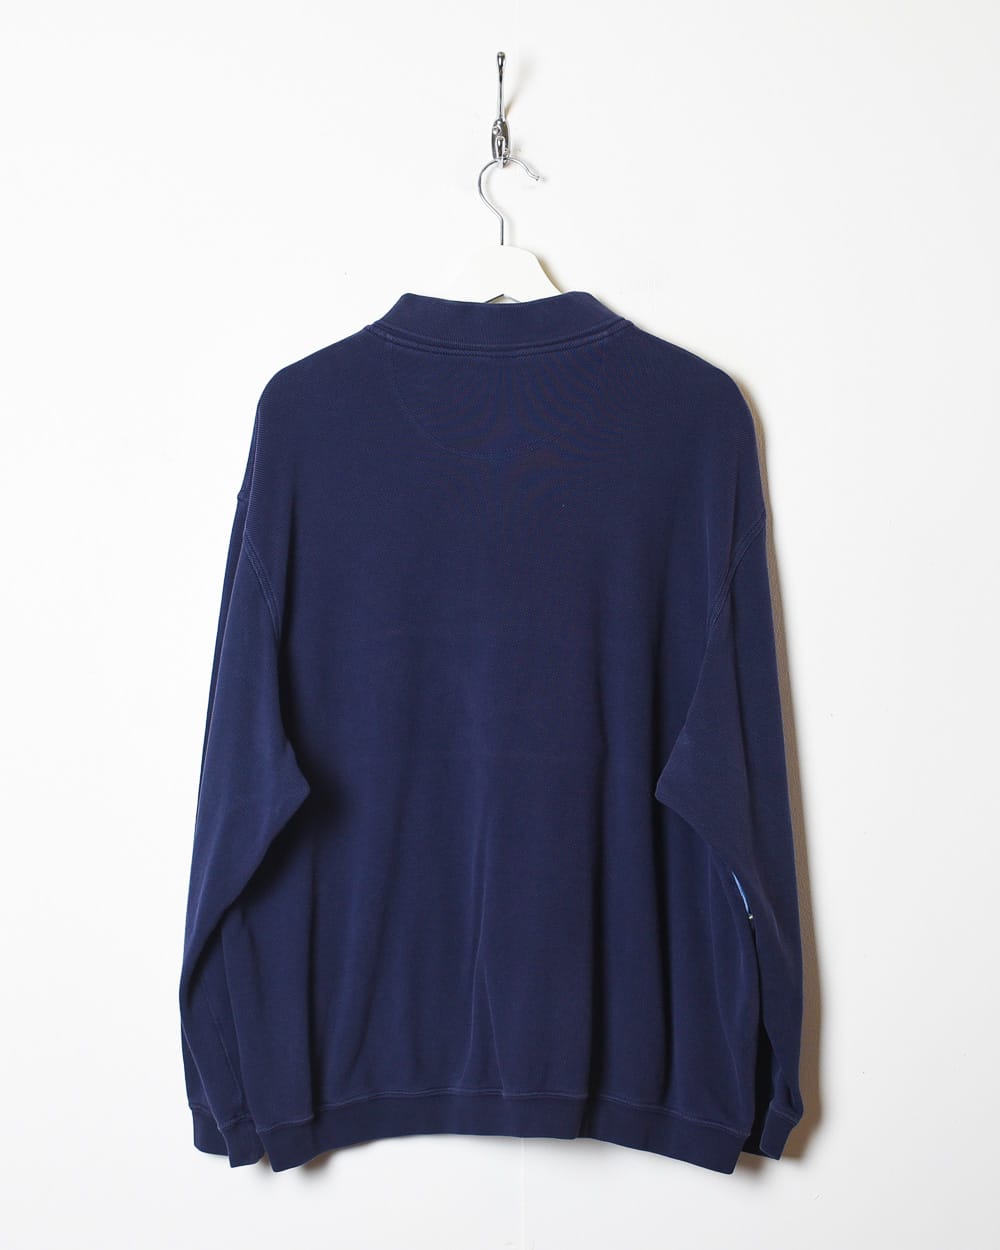 Navy Lacoste 1/4 Zip Collared Sweatshirt - Large